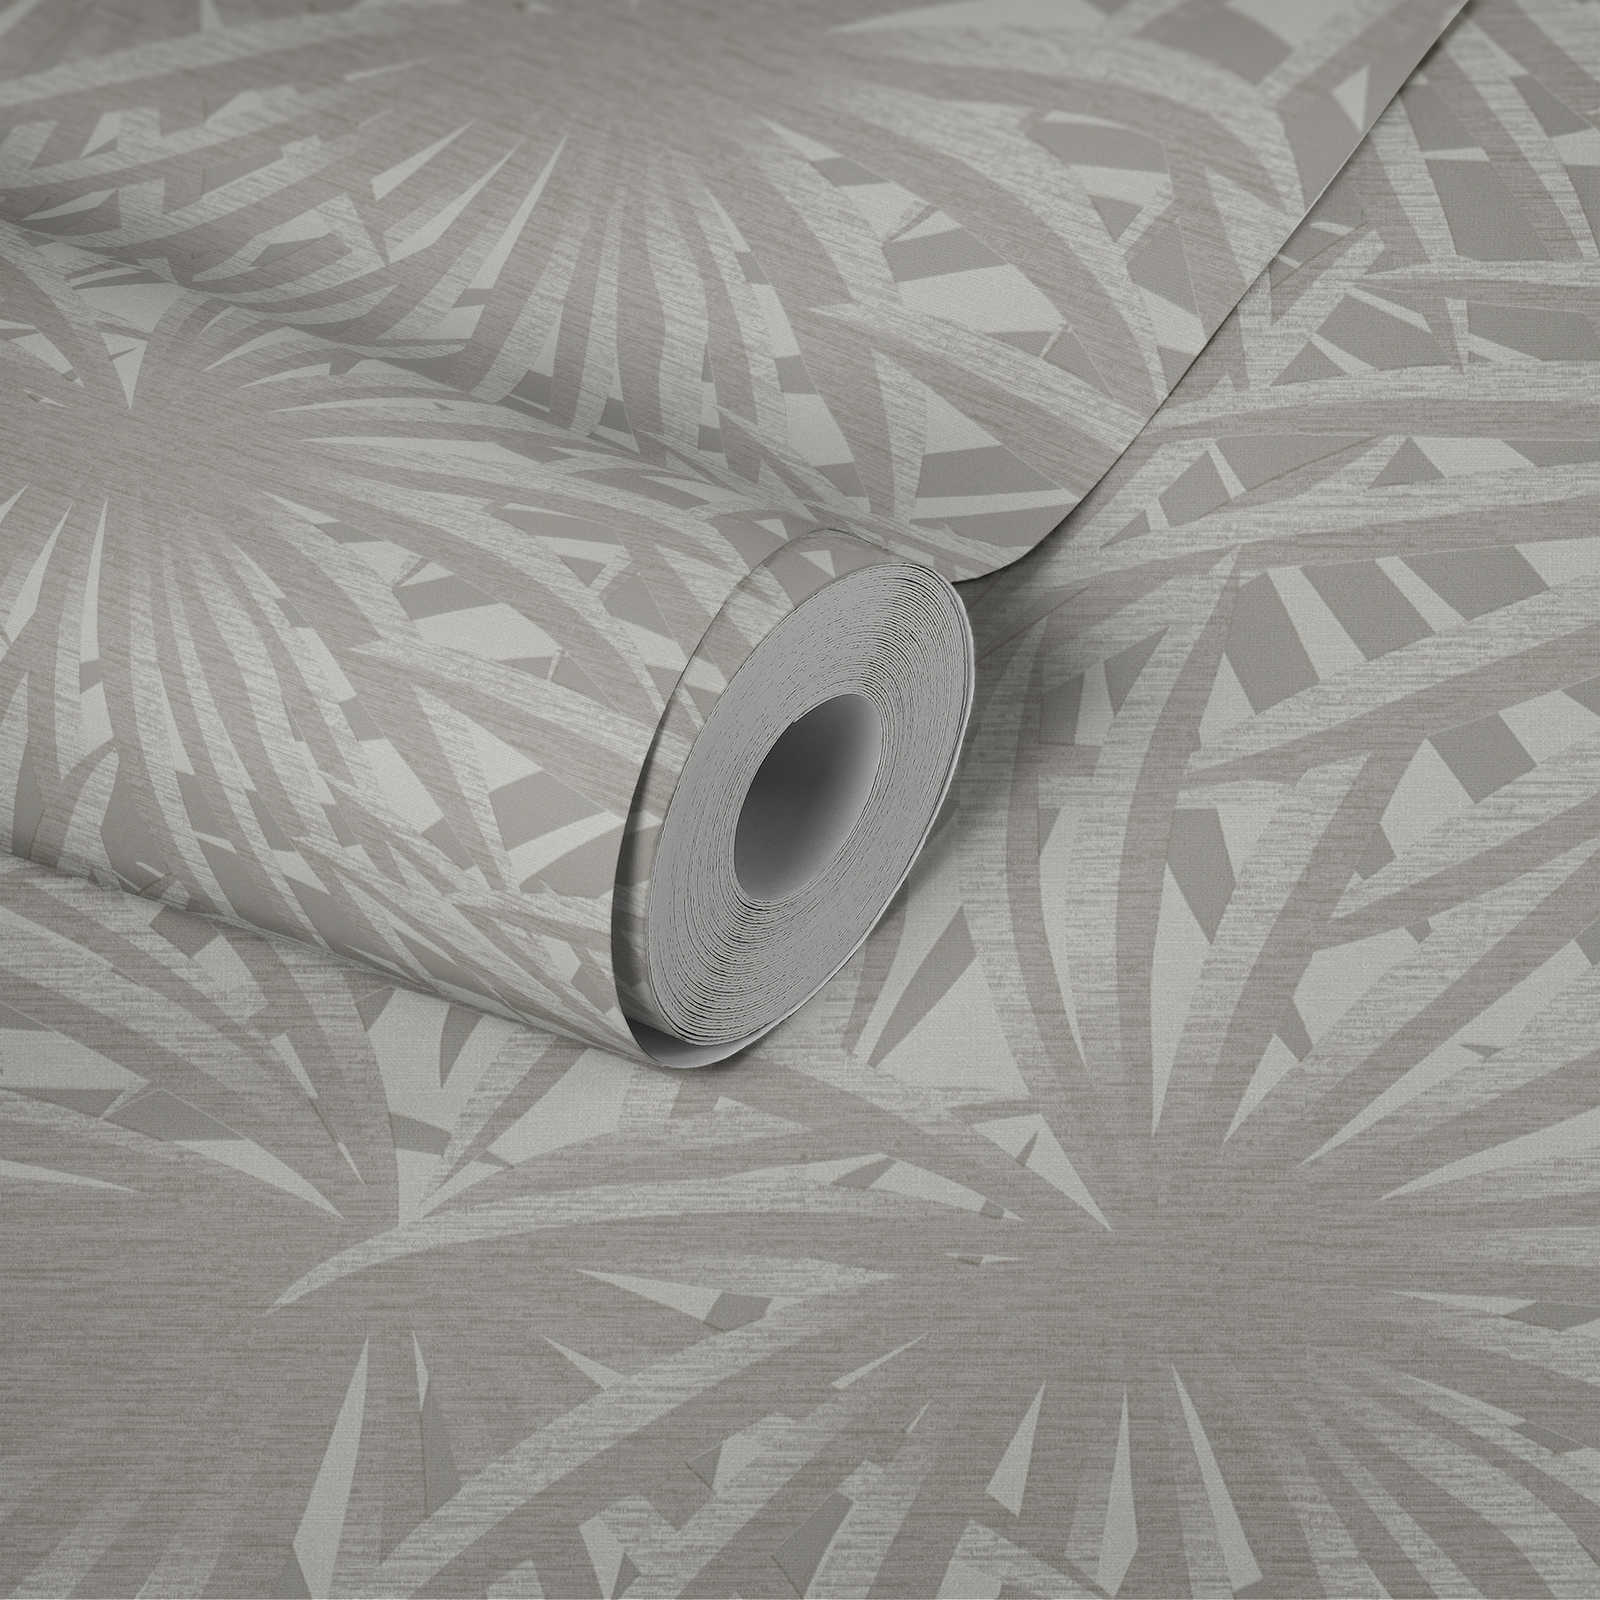             Non-woven wallpaper leaf design with metallic luster - grey, metallic, white
        